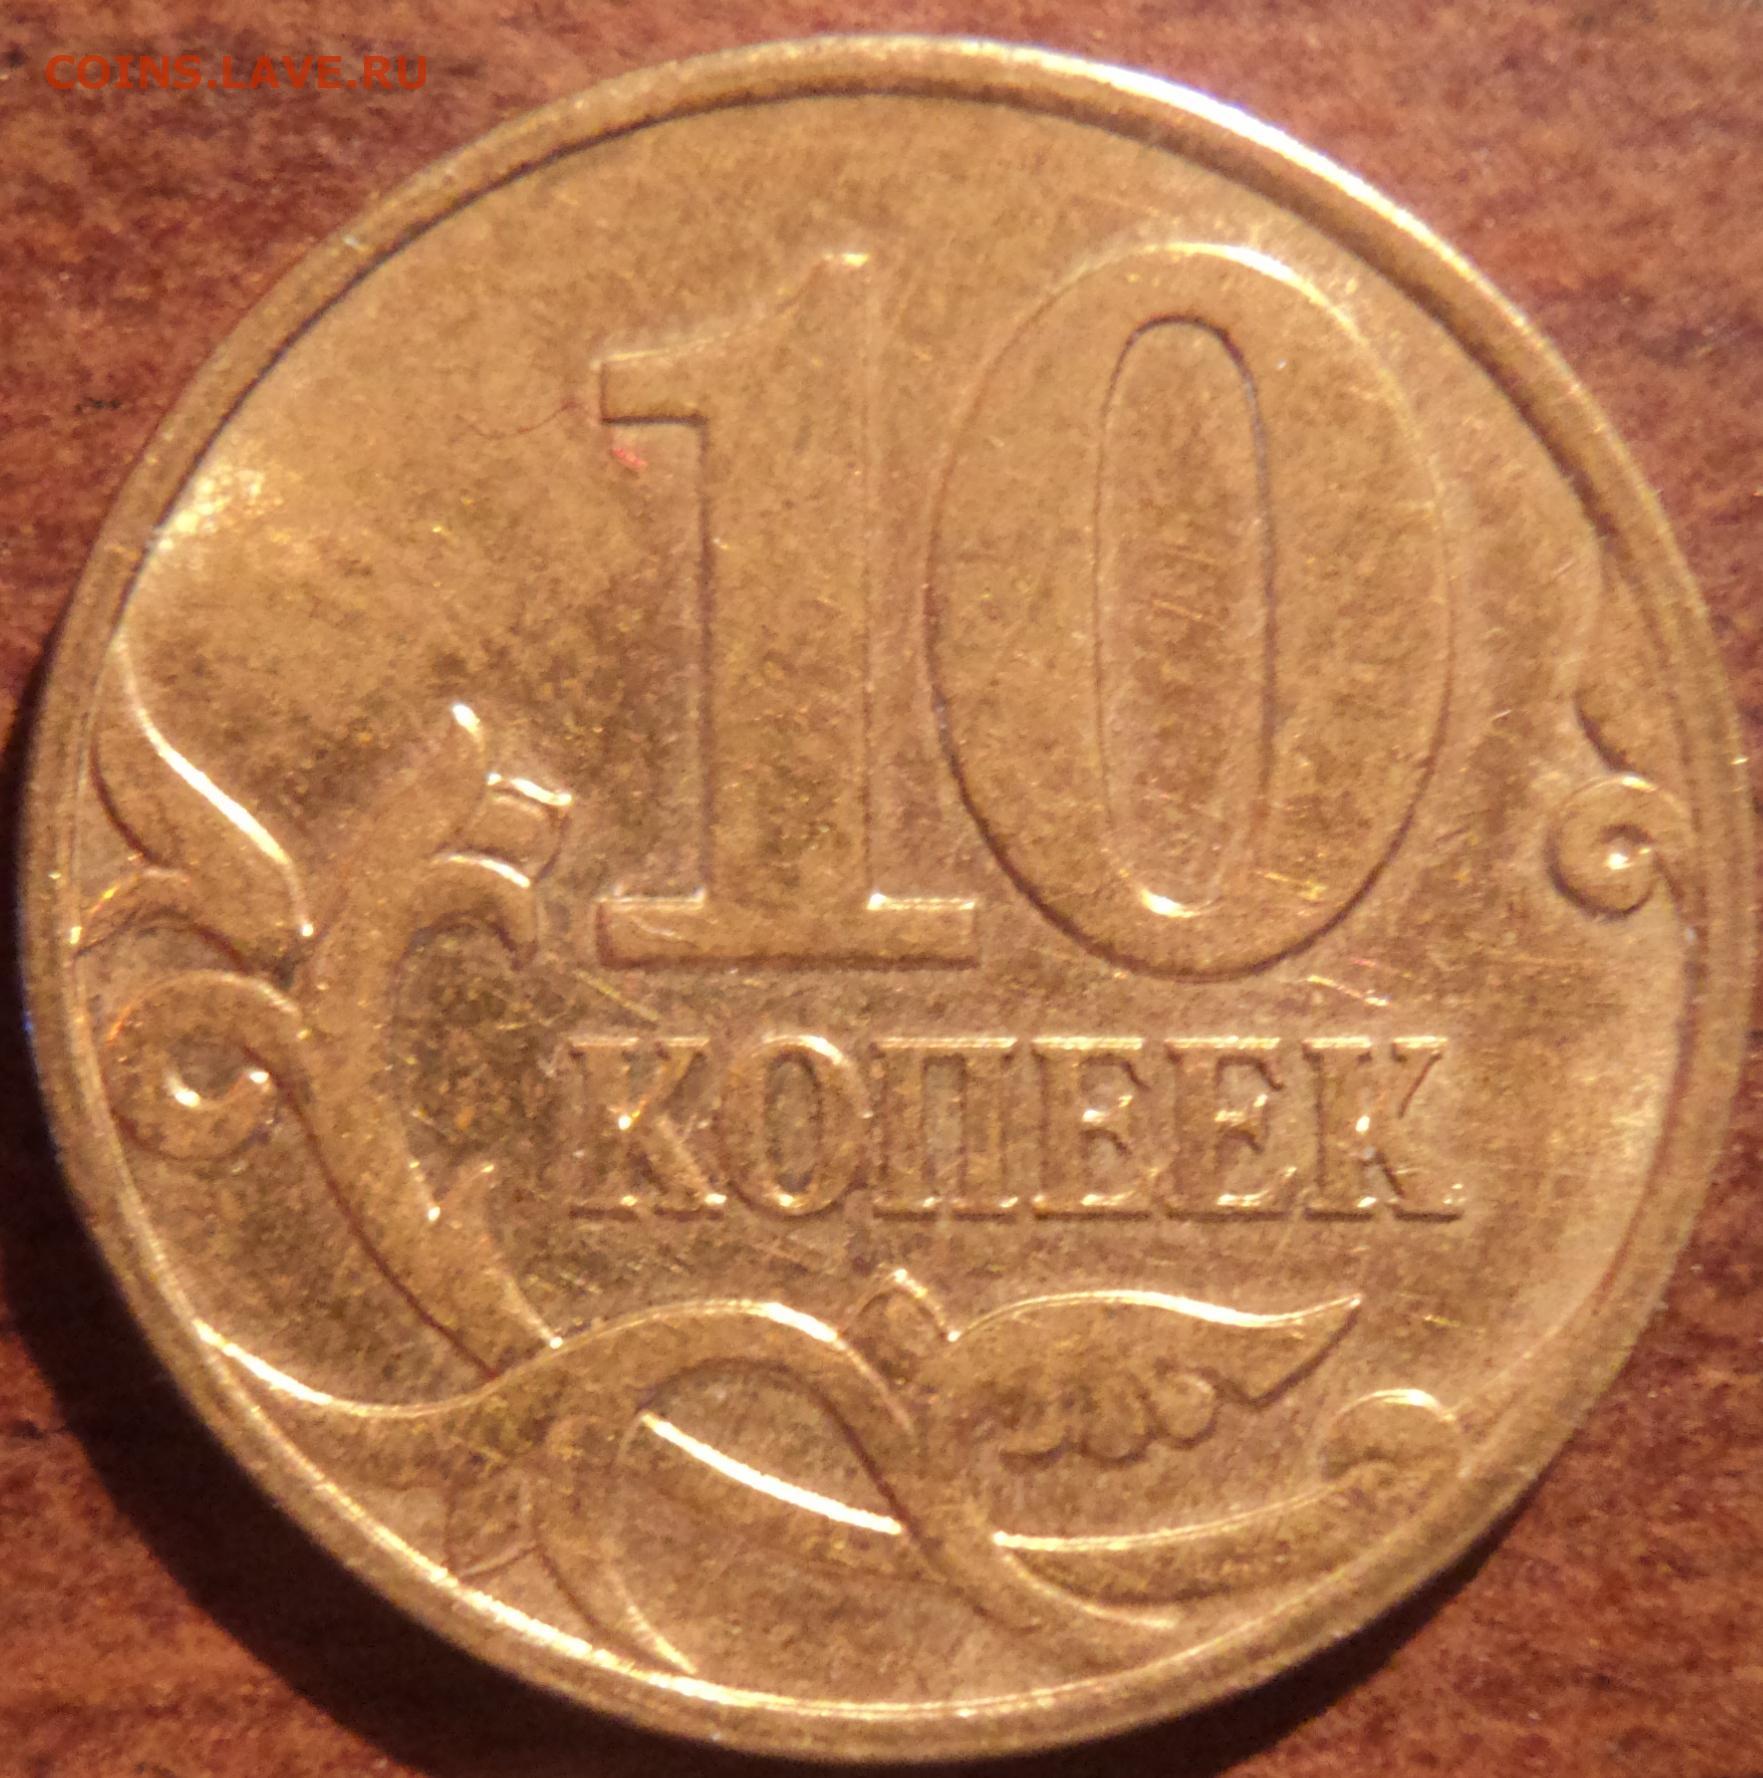 Монеты 10 копеек сп. 10 Копеек 2006 с-п (магнитные). 10 Копеек 2007. 10 Копеек 2007 года СП. 10 Копеек 2007 разновидности.